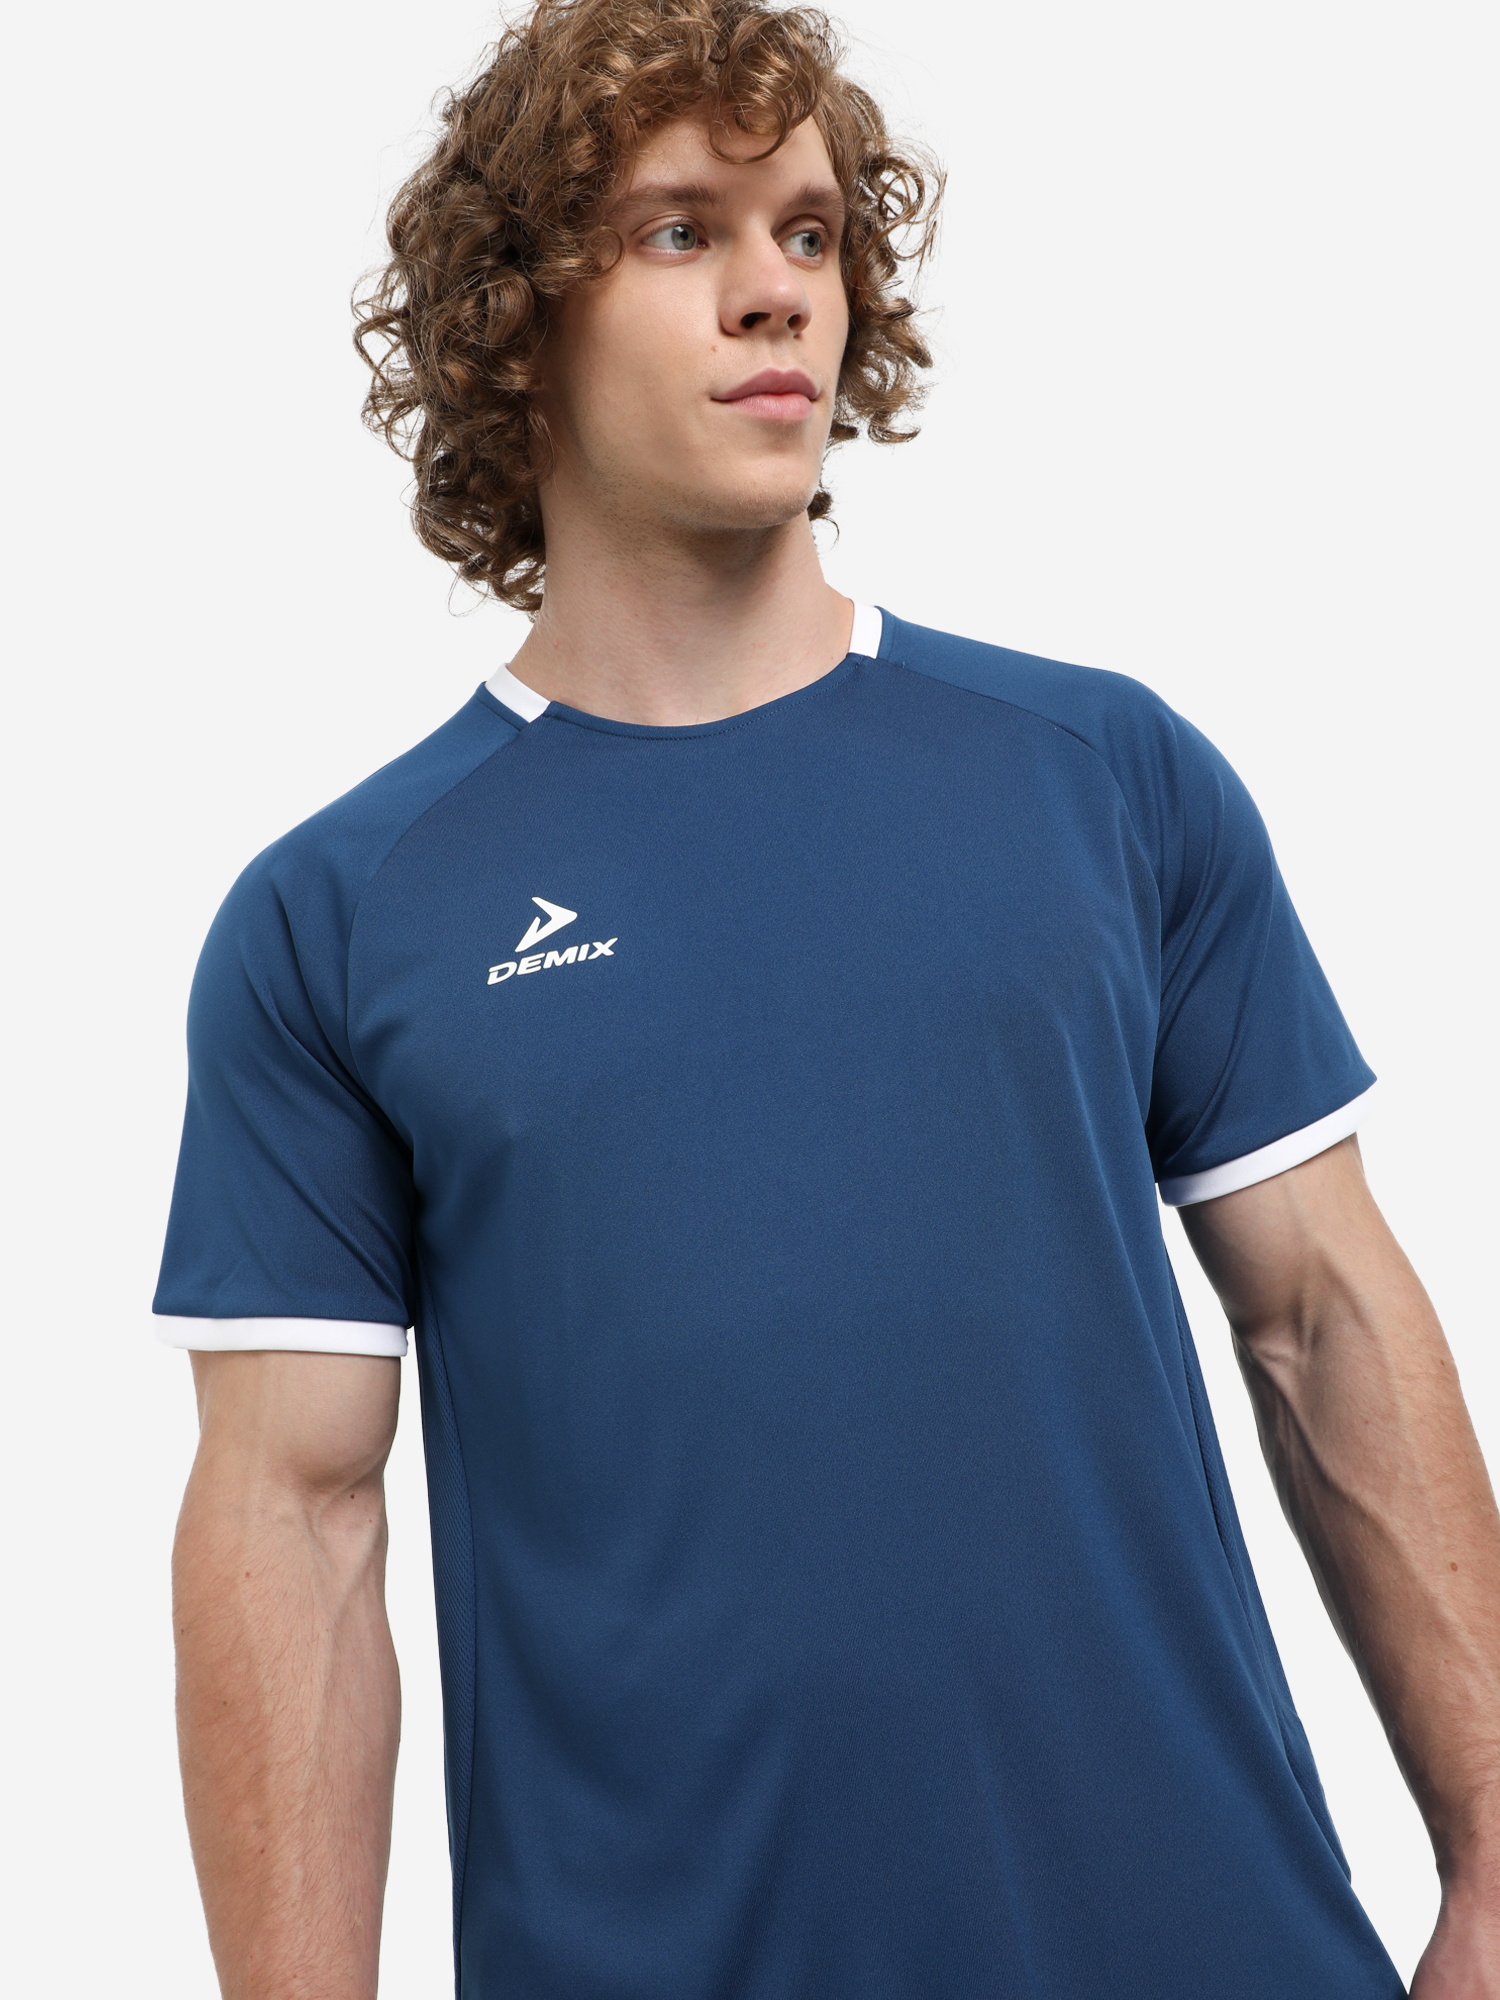 Футболка мужская Demix Division, Синий футболка мужская demix синий